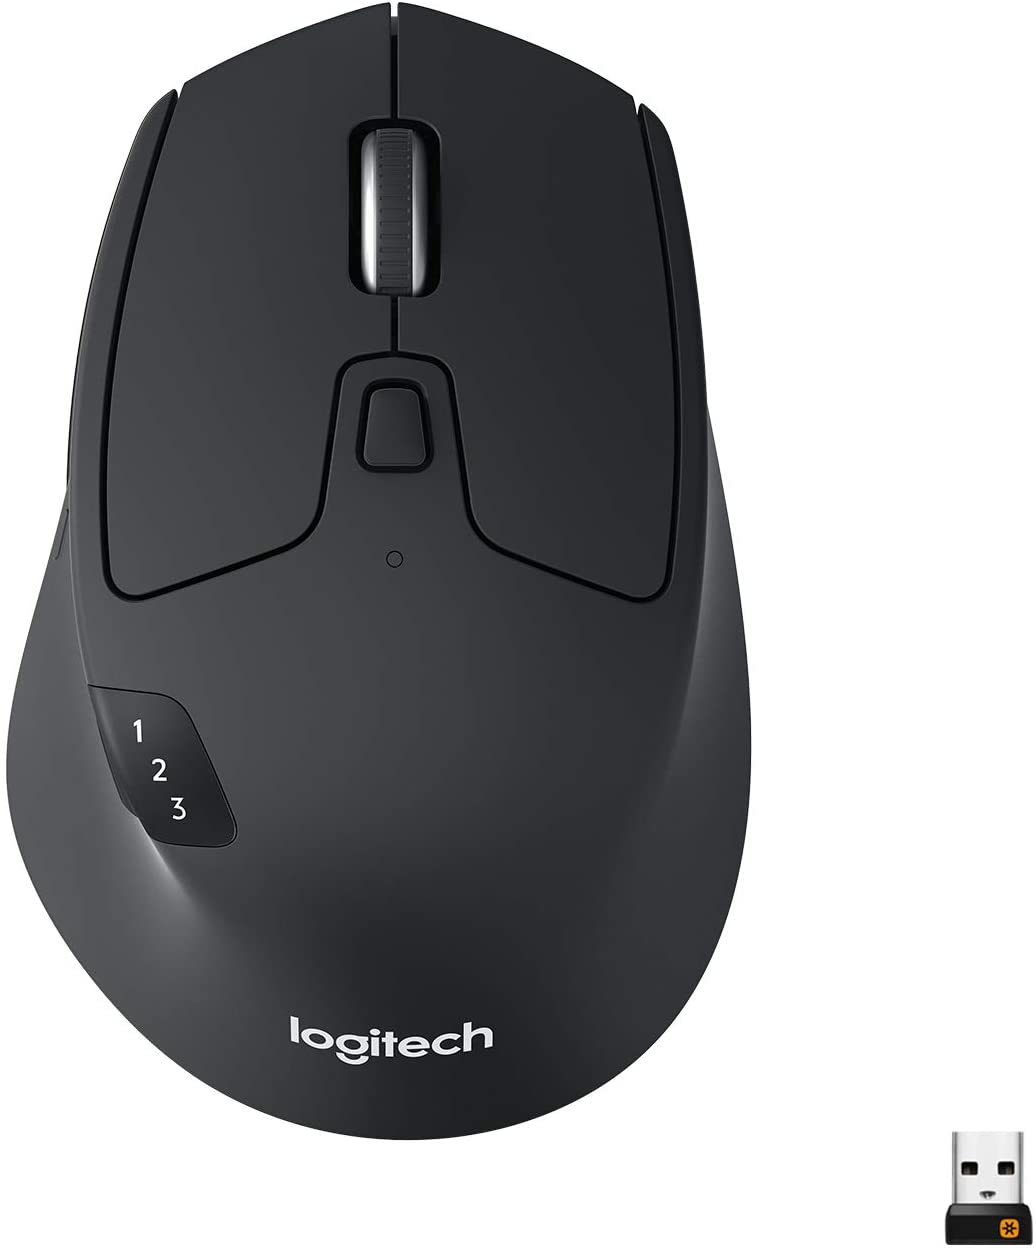 La souris sans-fil Logitech M720 : très ergonomique, elle est précise, dispose d'une roulette et te permet de passer d'un laptop à l'Ipad, sans aucun souci ! Une bonne souris si tu fais de la 3D.